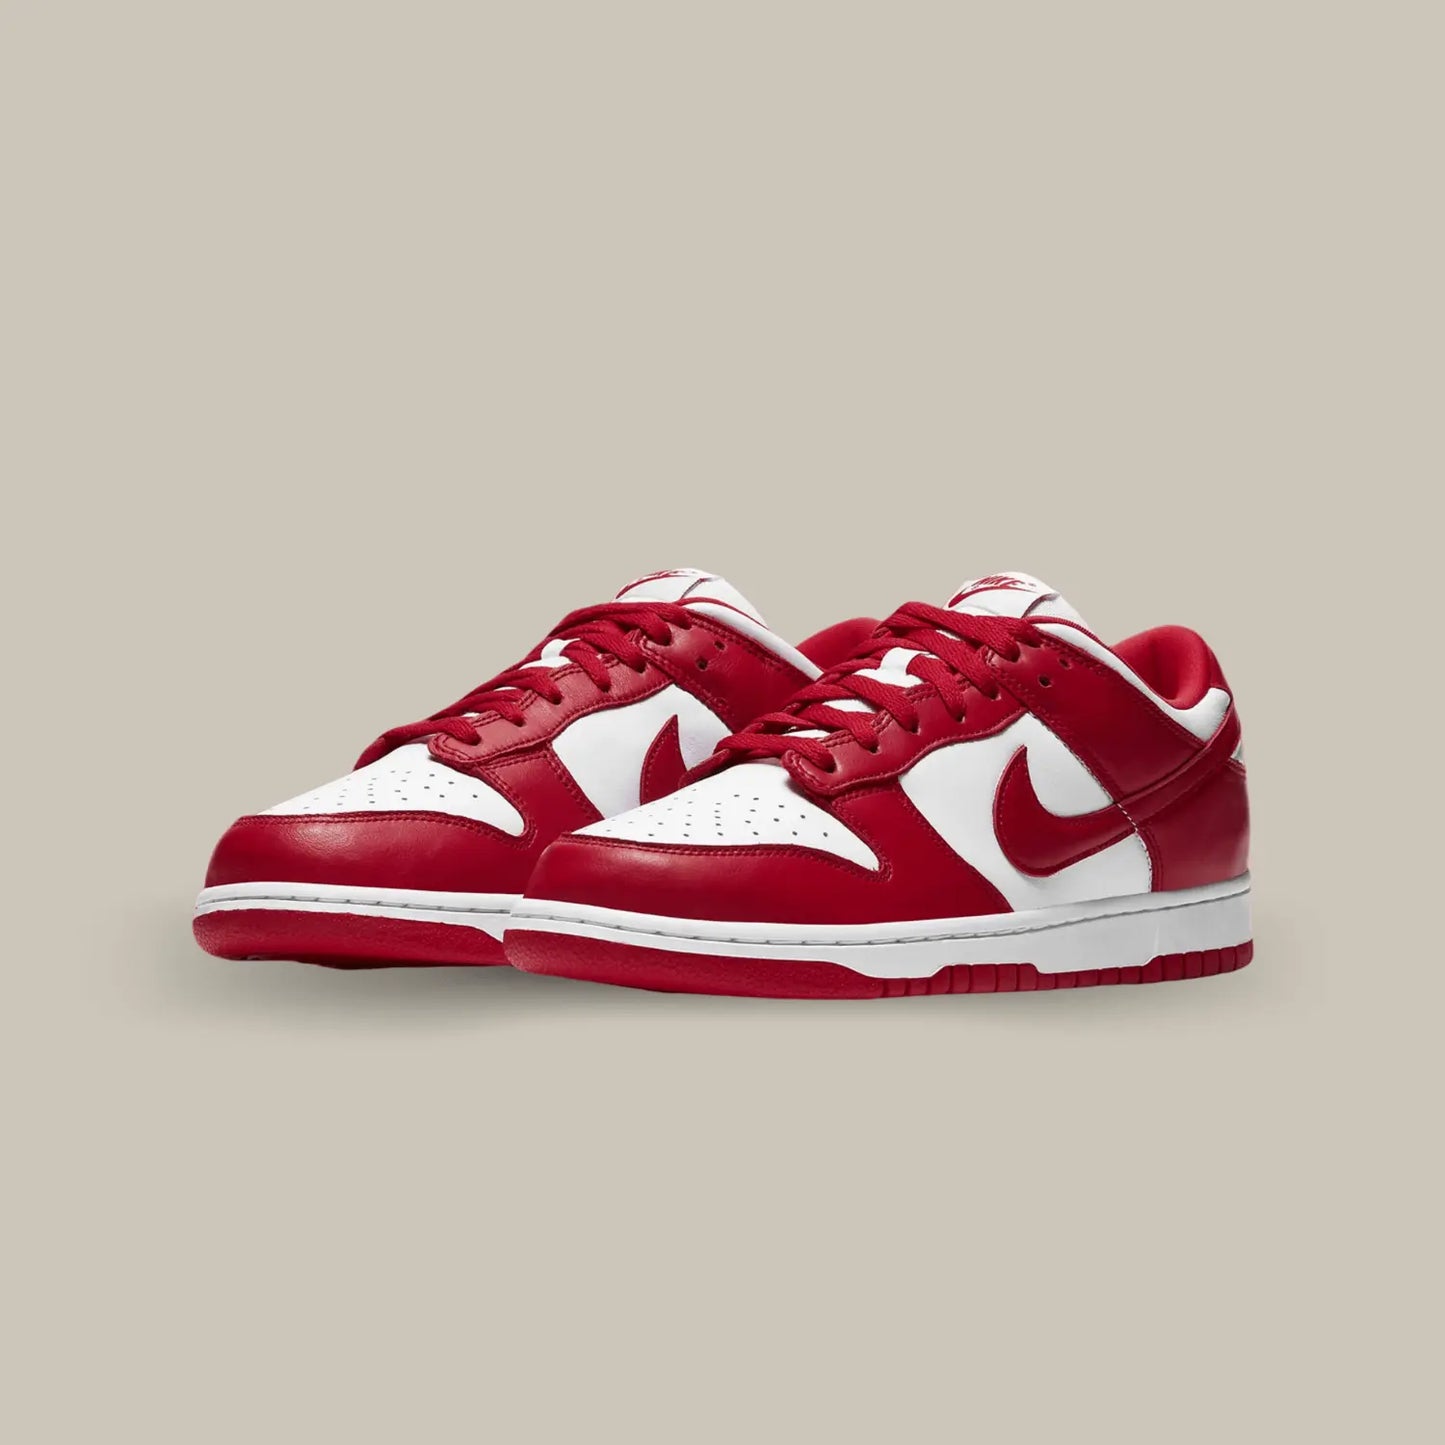 La Dunk Low University Red puise son inspiration dans l'héritage sportif de Nike tout en restant fidèle à son identité streetwear. Ce qui distingue immédiatement la Dunk Low University Red, c'est son design épuré et minimaliste. La tige en cuir blanc avec des empiècements rouge contrastent de manière frappante.